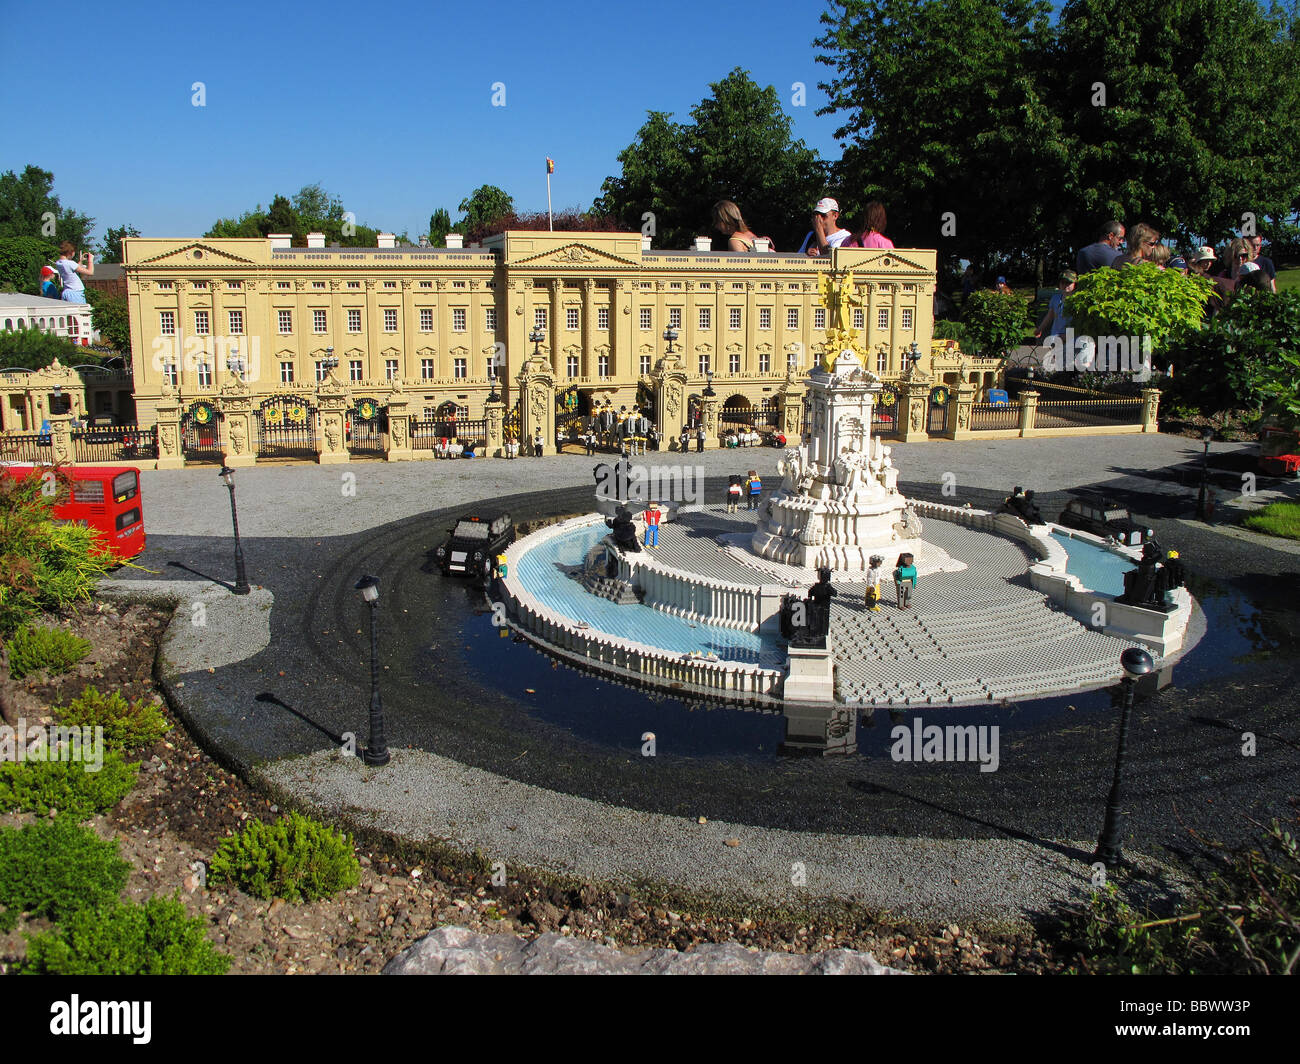 A Legoland Windsor Miniland scene depicting Buckingham Palace Stock Photo